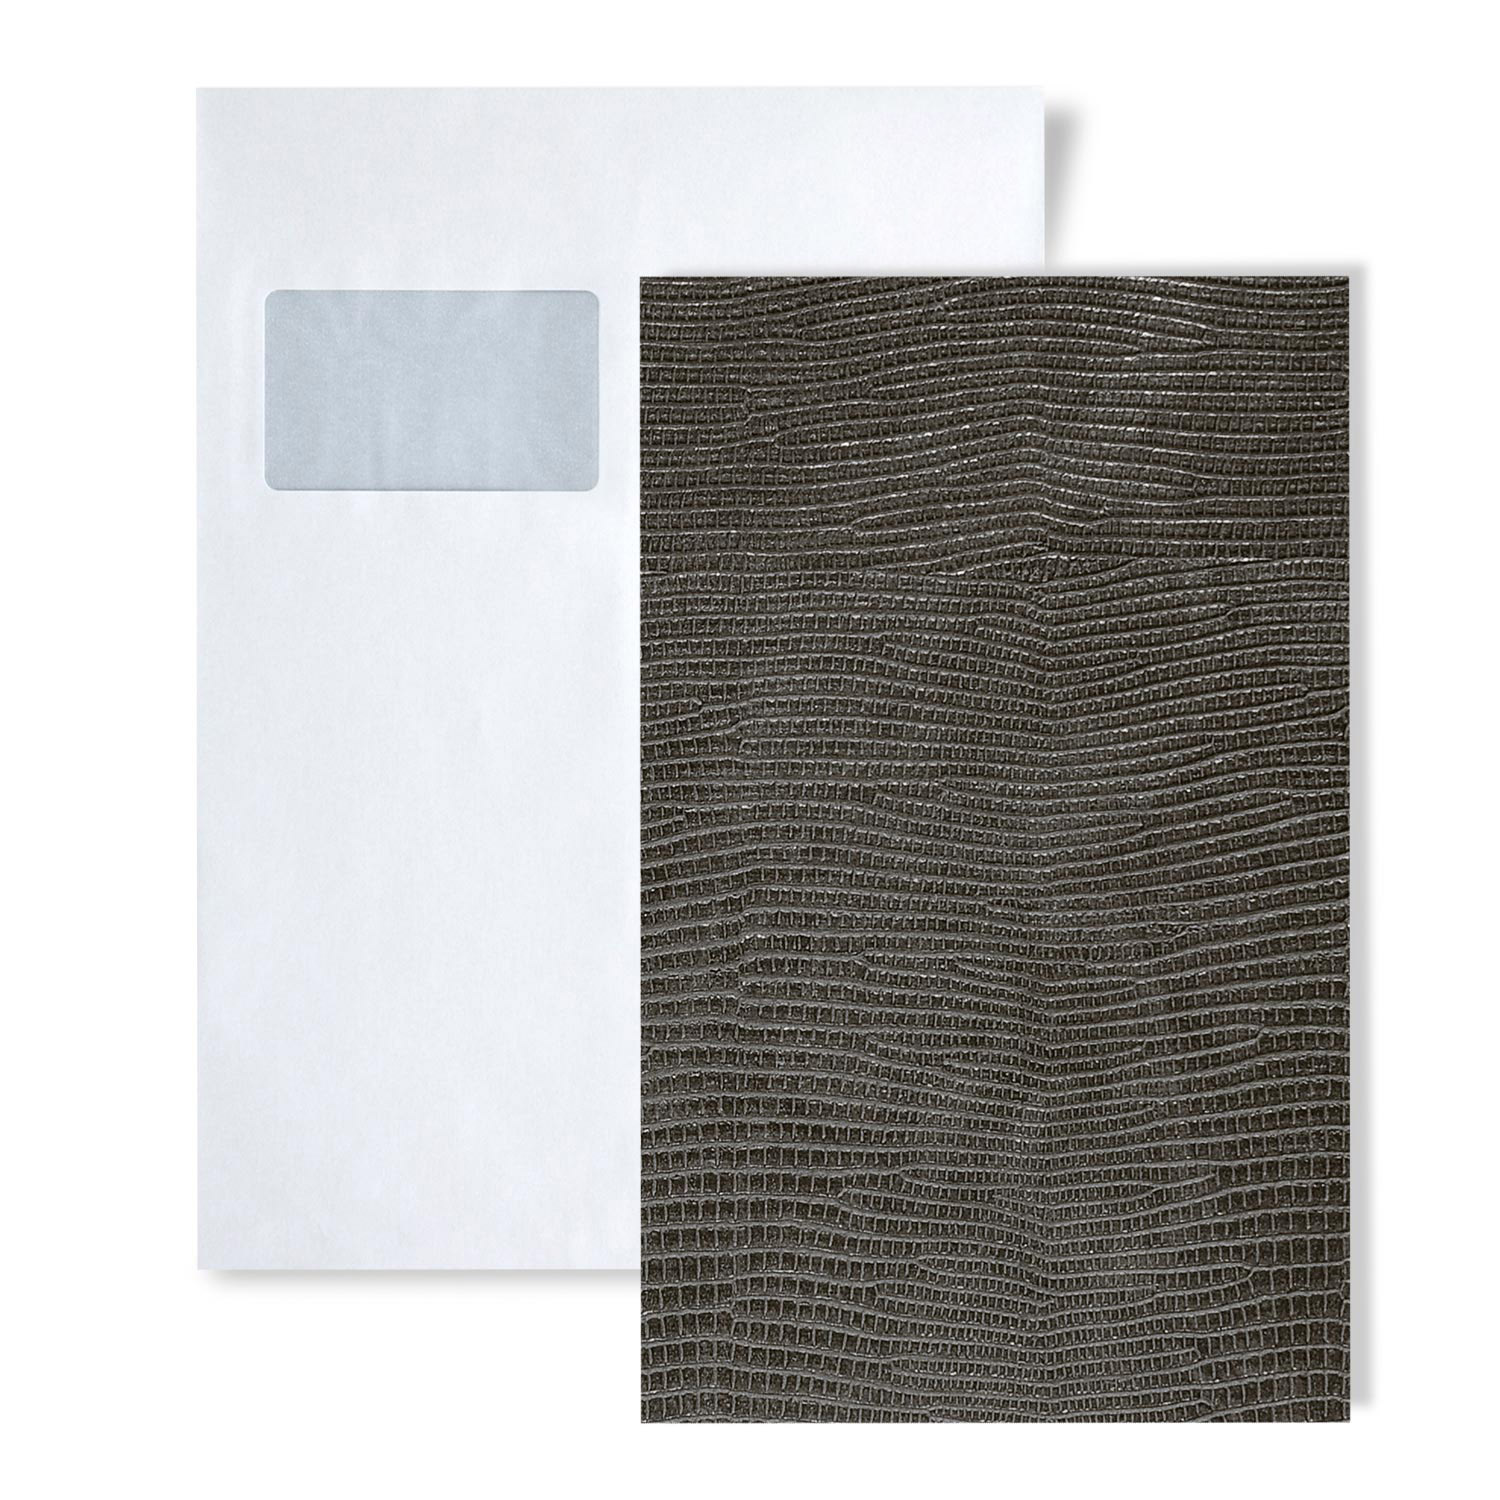 Wandpaneel Leder WallFace 12893 LEGUAN Design Blickfang Deko selbstklebende  Tapete Wandverkleidung silber-grau 2,60 qm